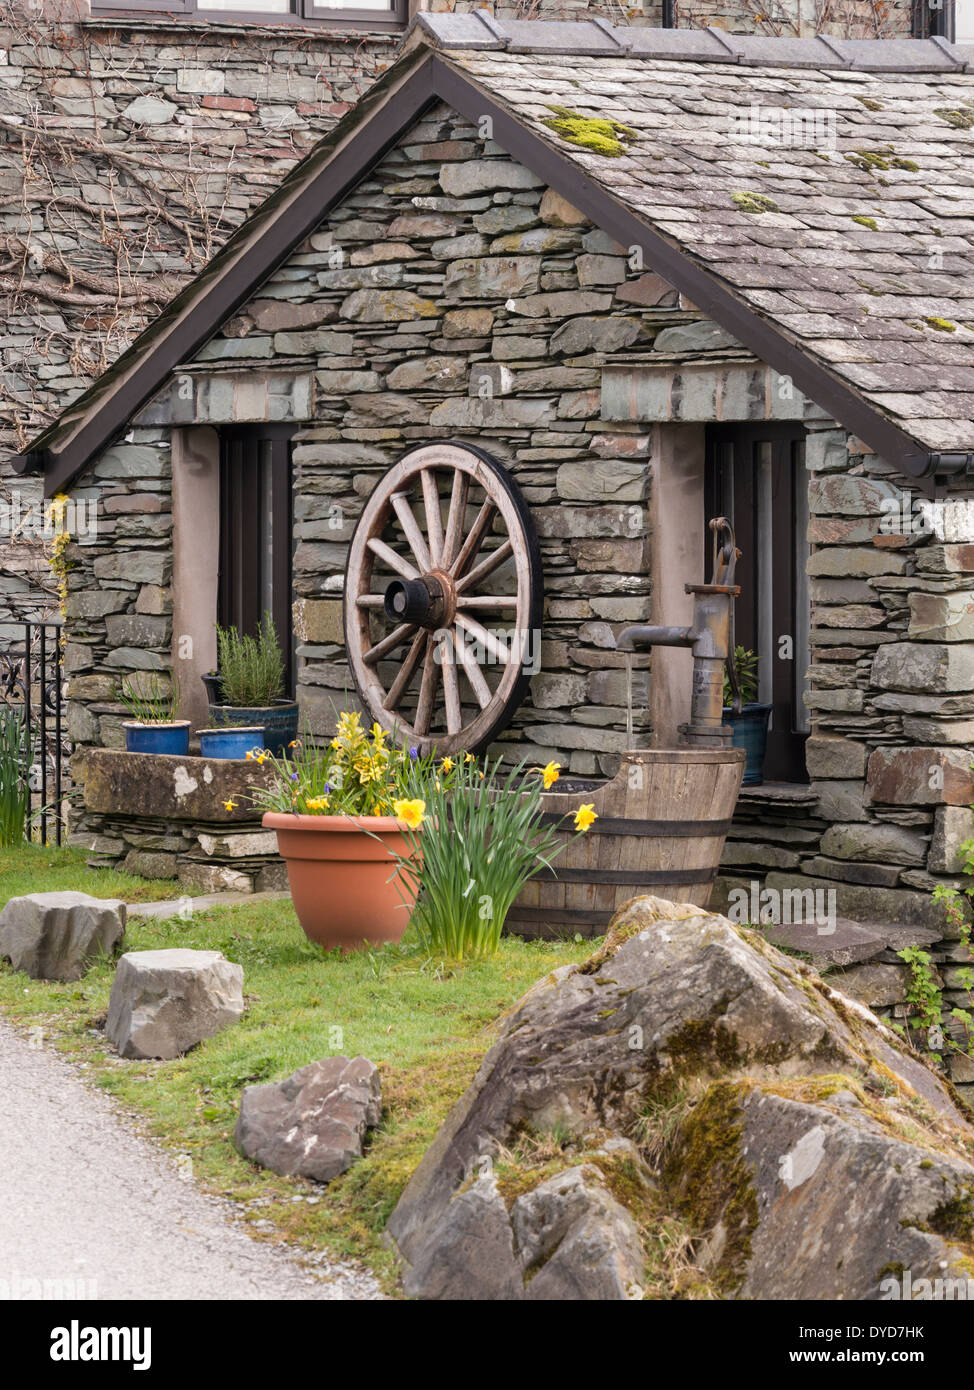 Ancien cottage traditionnel en pierre sèche en ardoise, Elterwater, English Lake District Cumbria, Angleterre, Royaume-Uni Banque D'Images